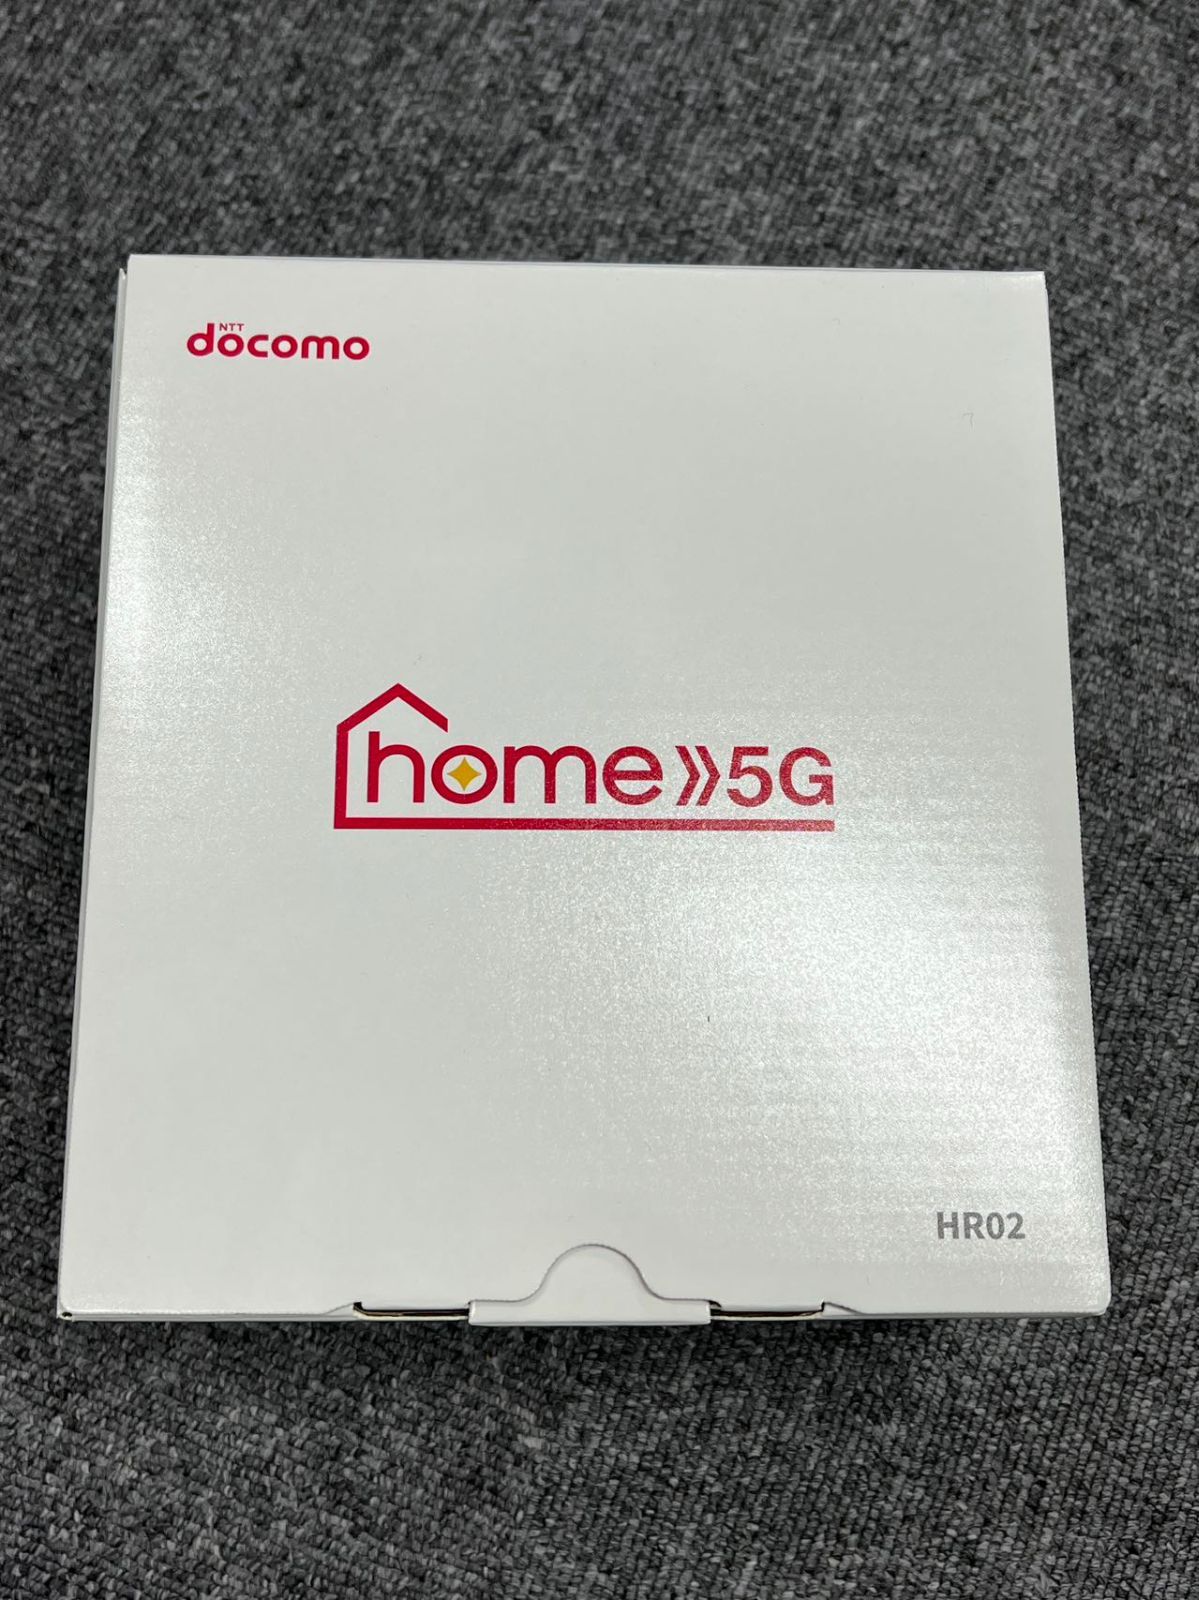 未使用品 Docomo home 5G HR02 ホームルーター - メルカリ